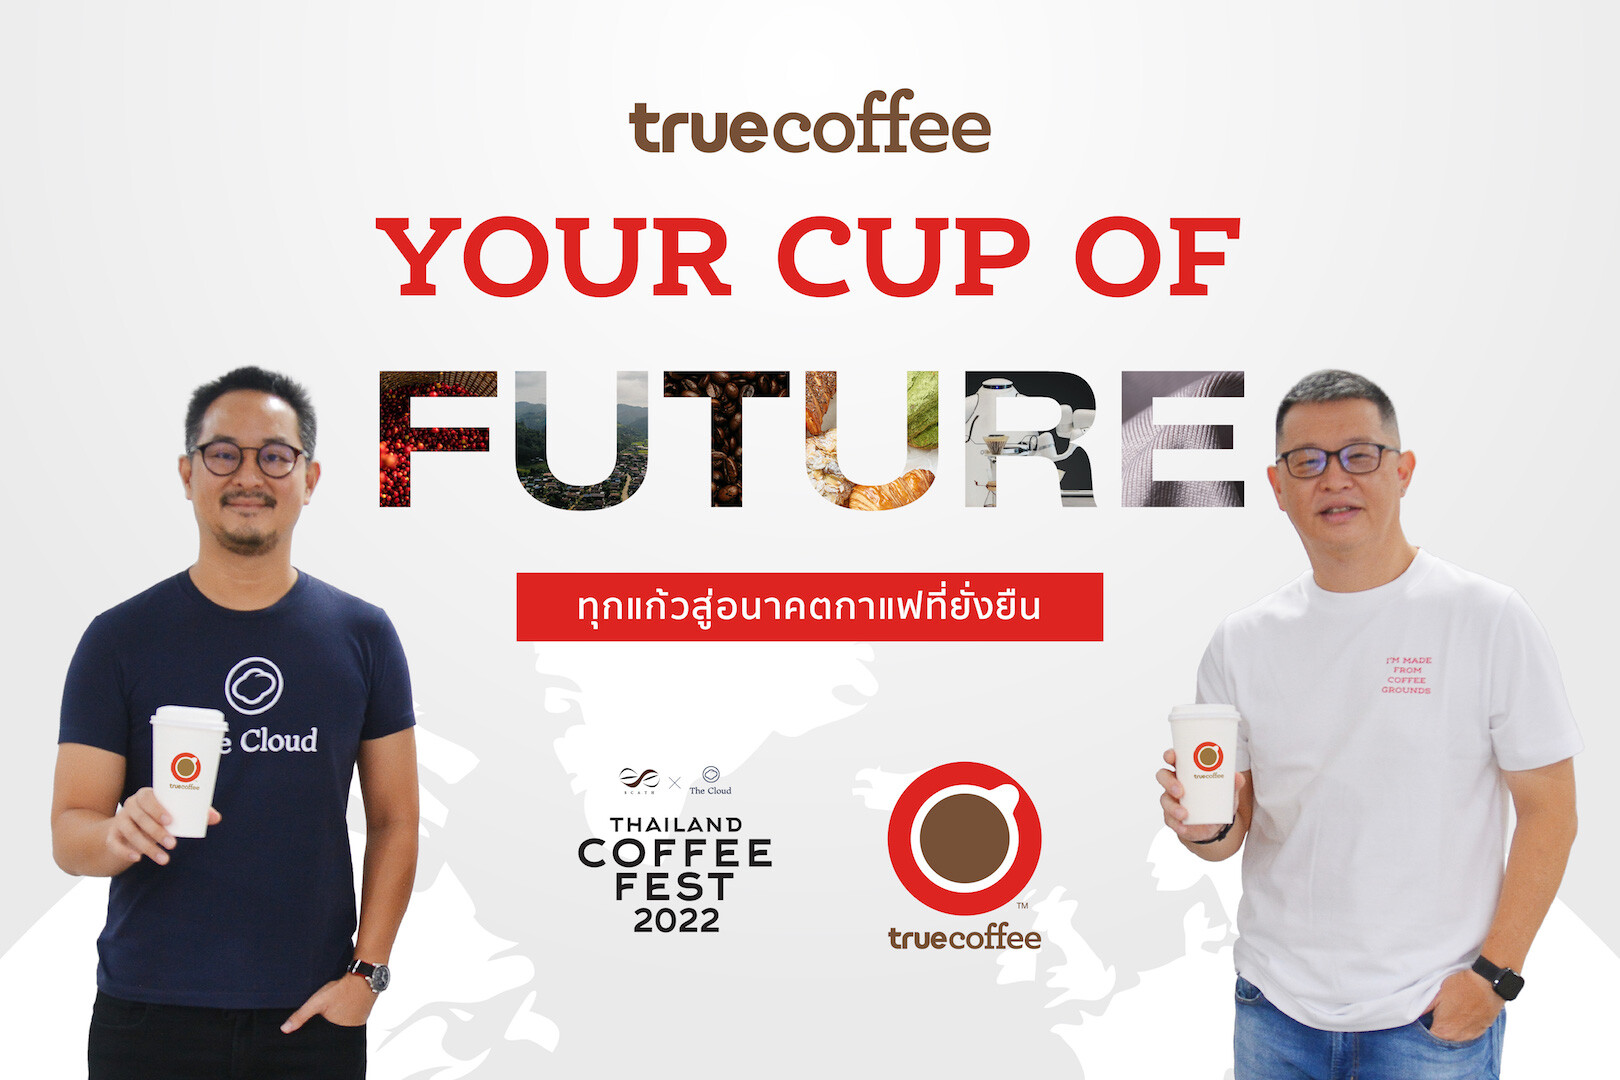 ทรูคอฟฟี่ x The Cloud ร่วมสร้างประวัติศาสตร์ครั้งใหม่ สู่อนาคตวงการกาแฟไทยที่ยั่งยืน ในมหกรรมคนรักกาแฟสุดยิ่งใหญ่ "Thailand Coffee Fest 2022" พบกัน 14 - 17 ก.ค.นี้ อิมแพ็ค เมืองทอง ธานี ฮอลล์ 5 - 7